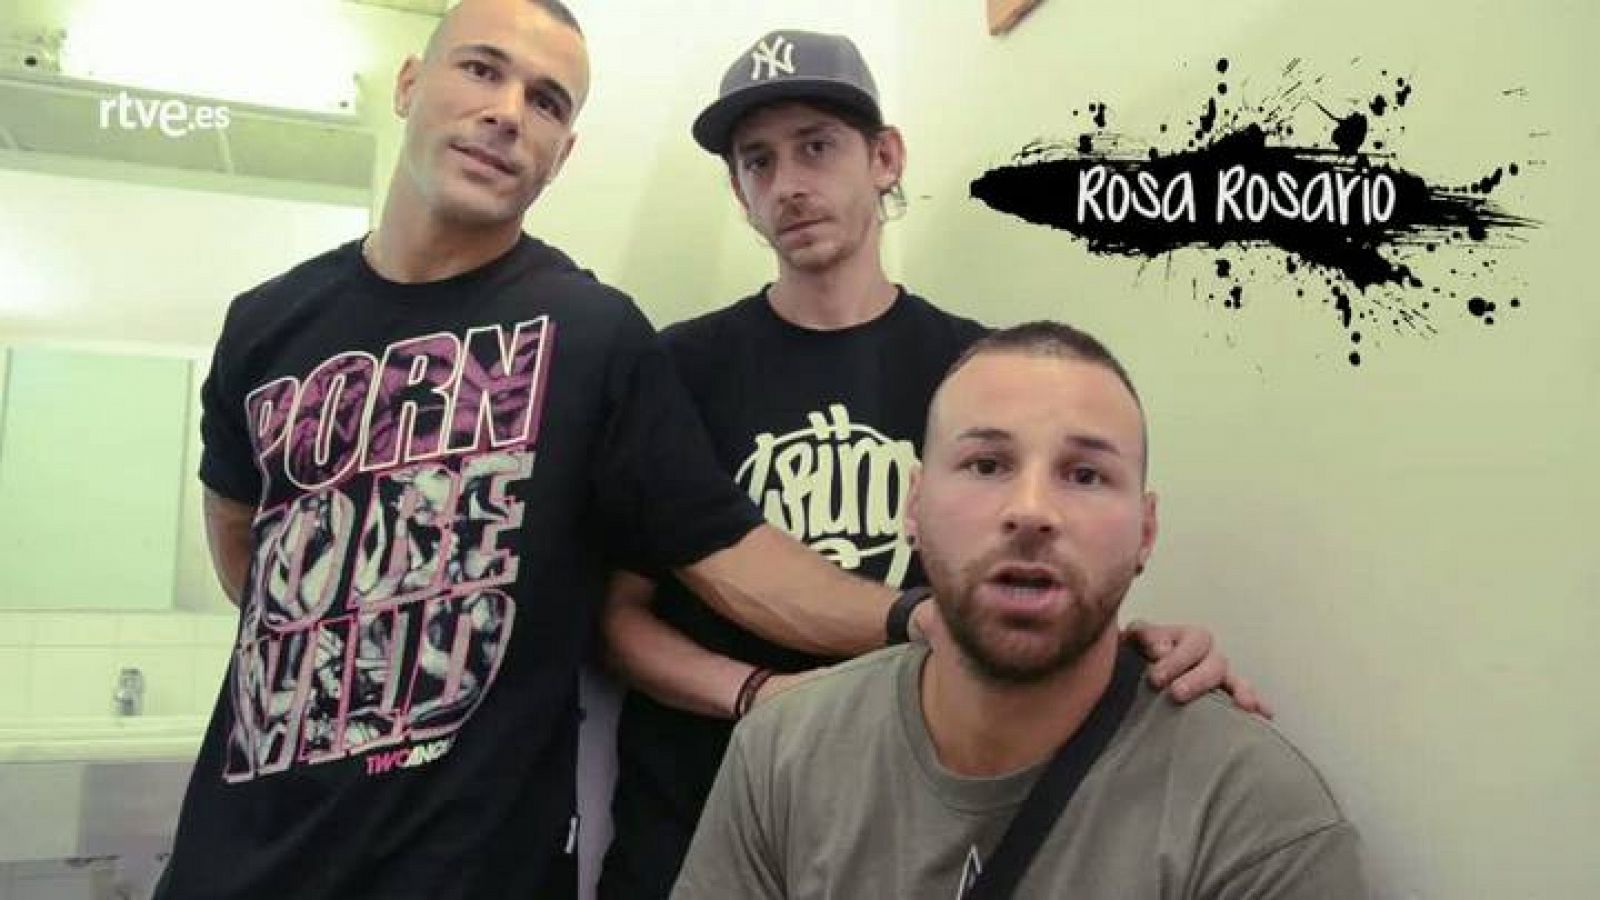  Rosa Rosario son un grupo de rap que además se dedican al graffiti